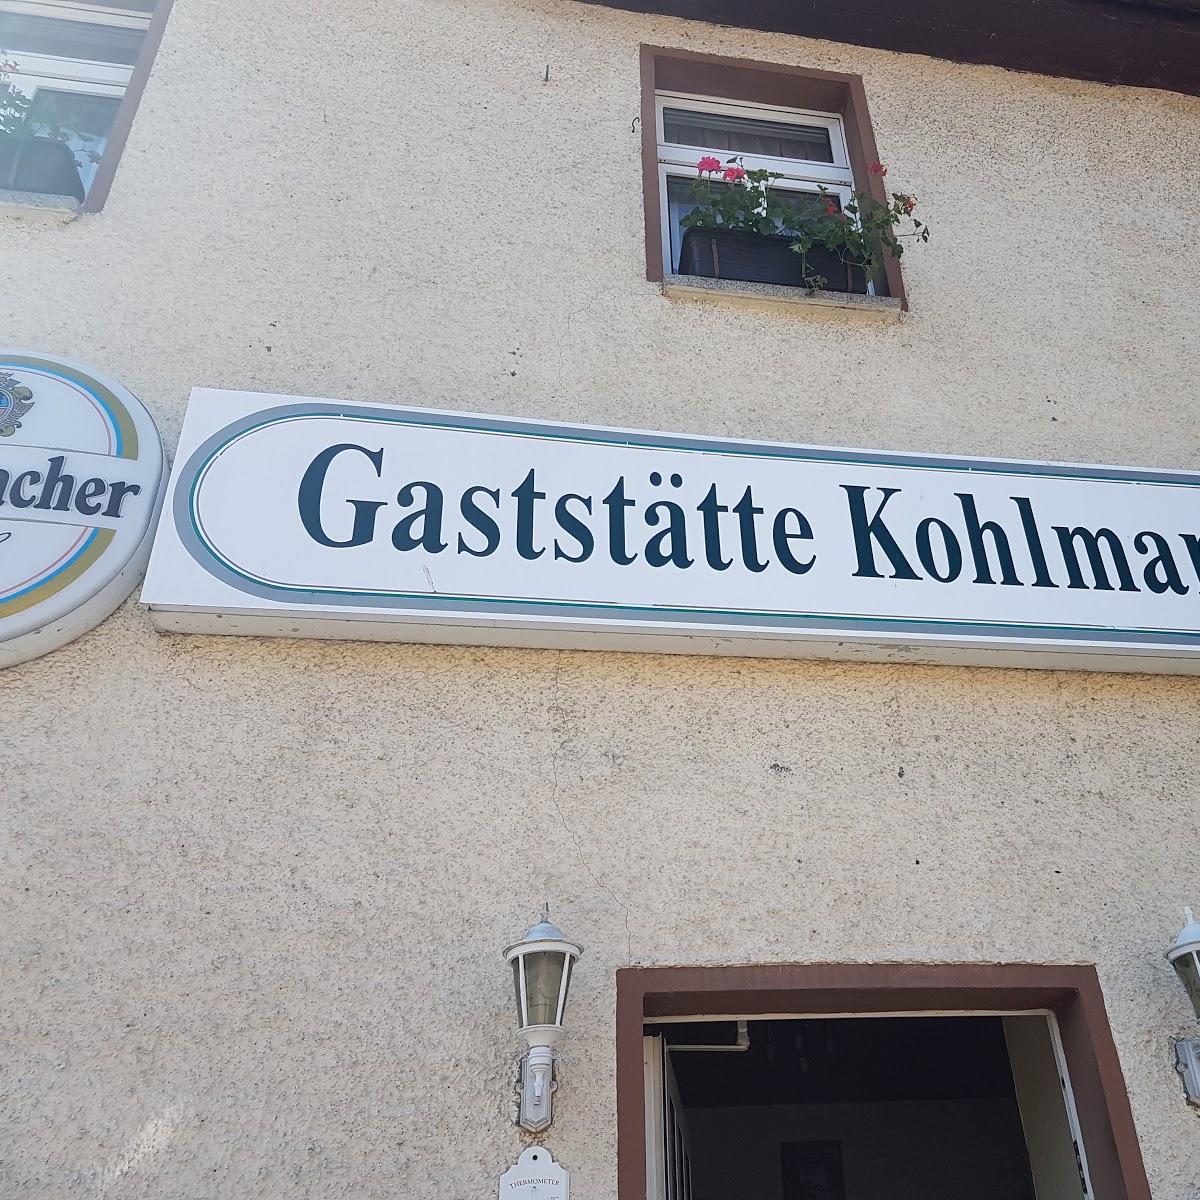 Restaurant "Gaststätte Uta Kohlmann" in Finne